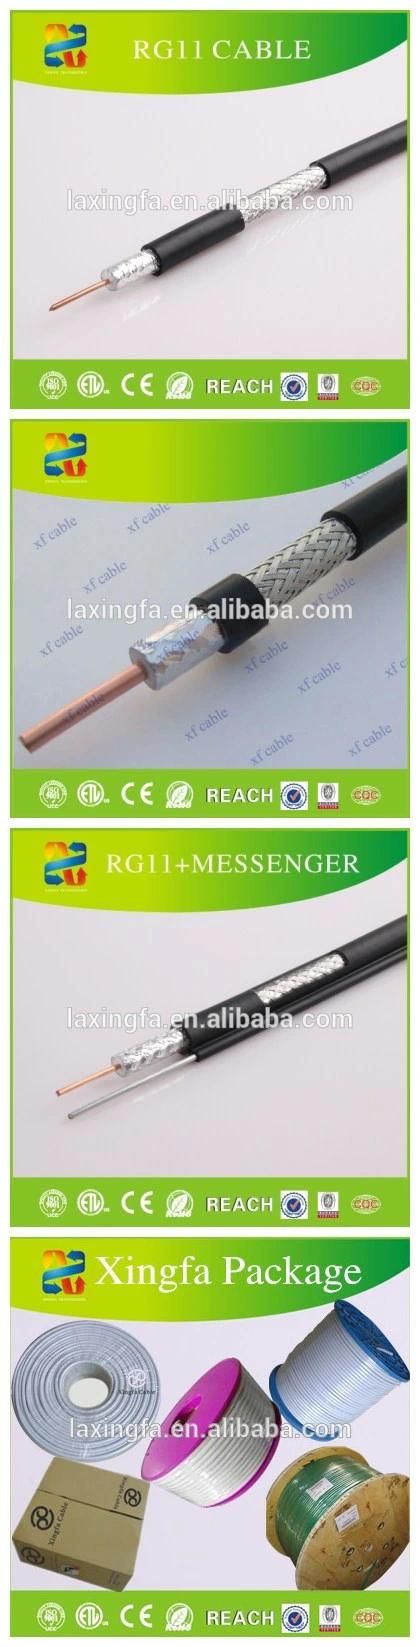 Hangzhou Xingfa Cable Rg11 Coaxial Cable